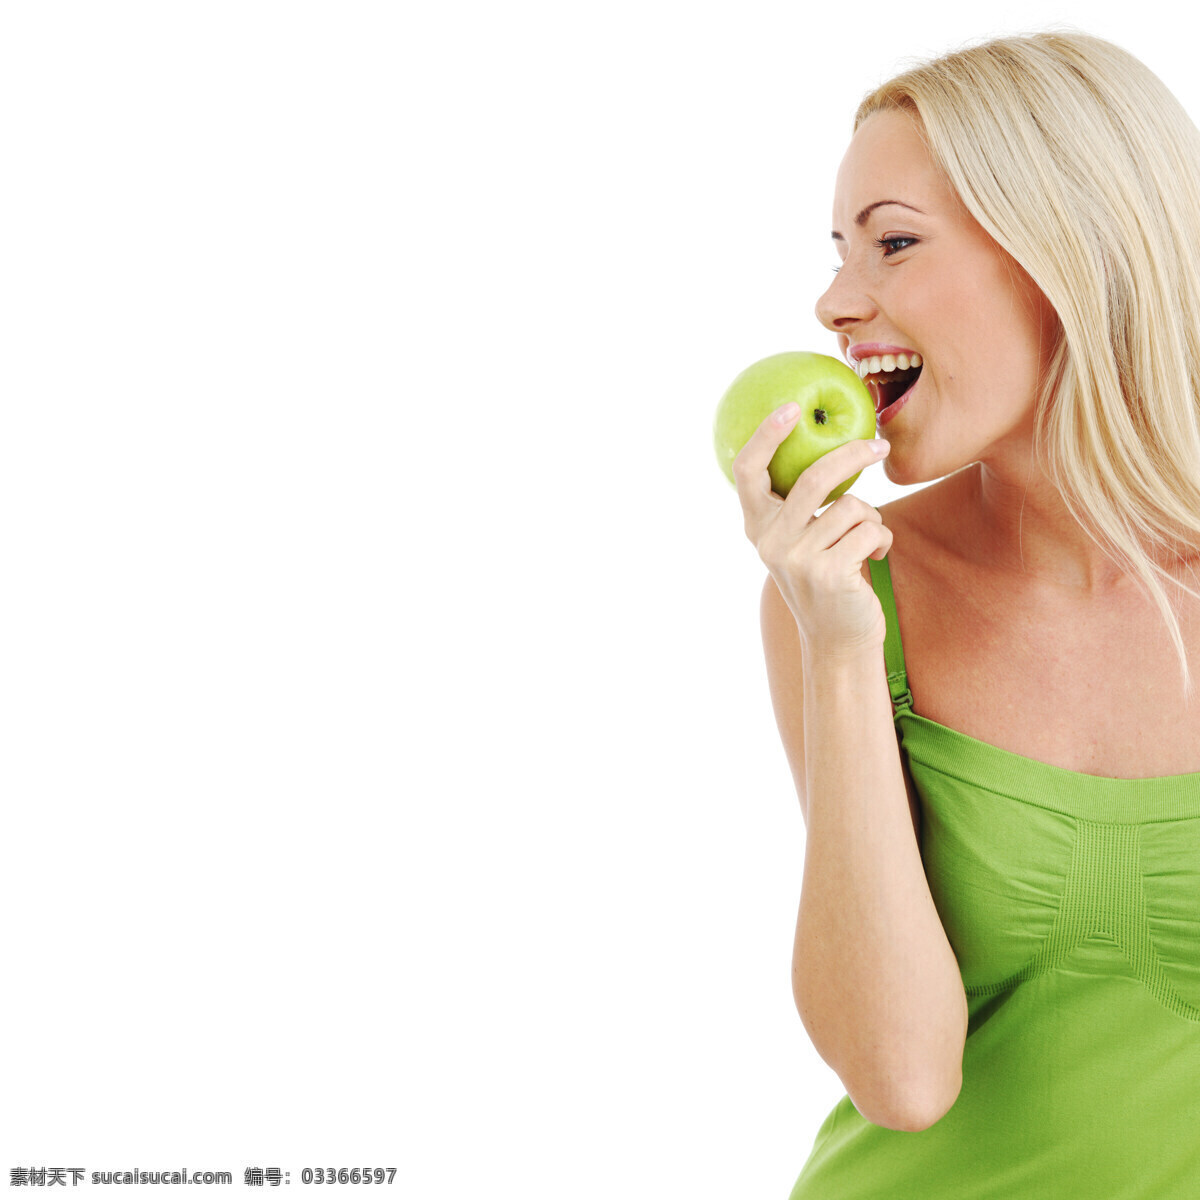 绿色 苹果 美女图片 拿着 吃 美女 牙齿素材 人体器官图 人物图片